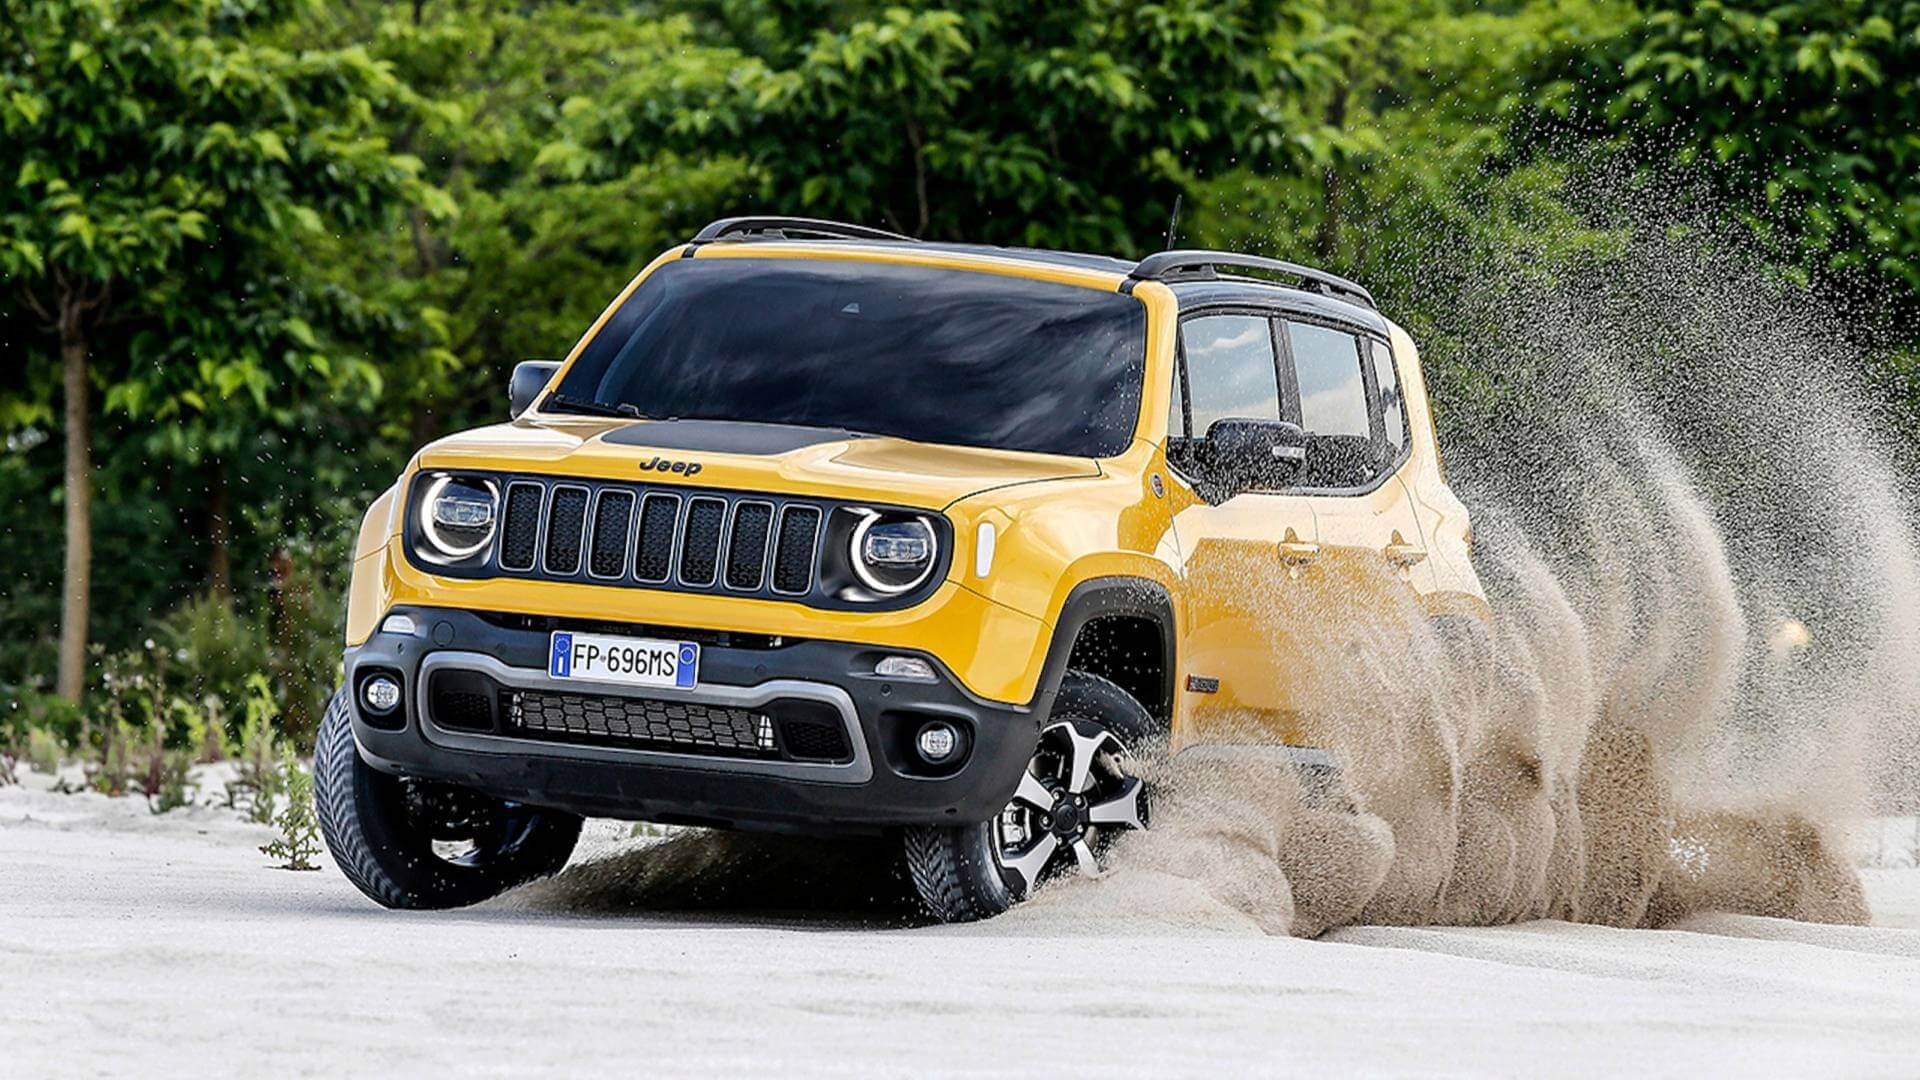 Νέα εποχή για την μάρκα Jeep στην Ελληνική αγορά